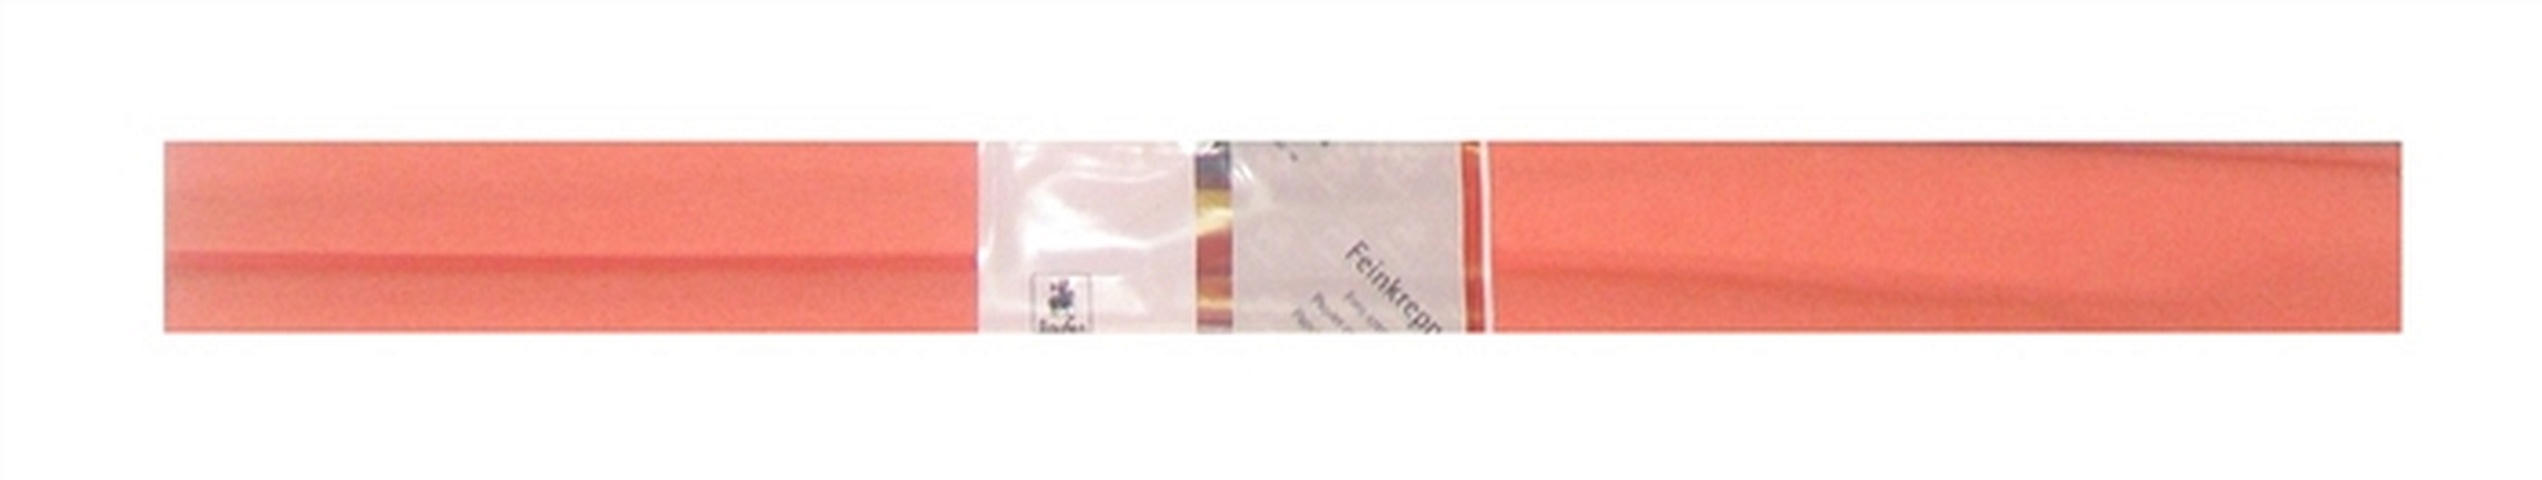 Бумага гофрированная Лосось 50*250 WEROLA бумага крепированная werola цвет бордо 50х250 см